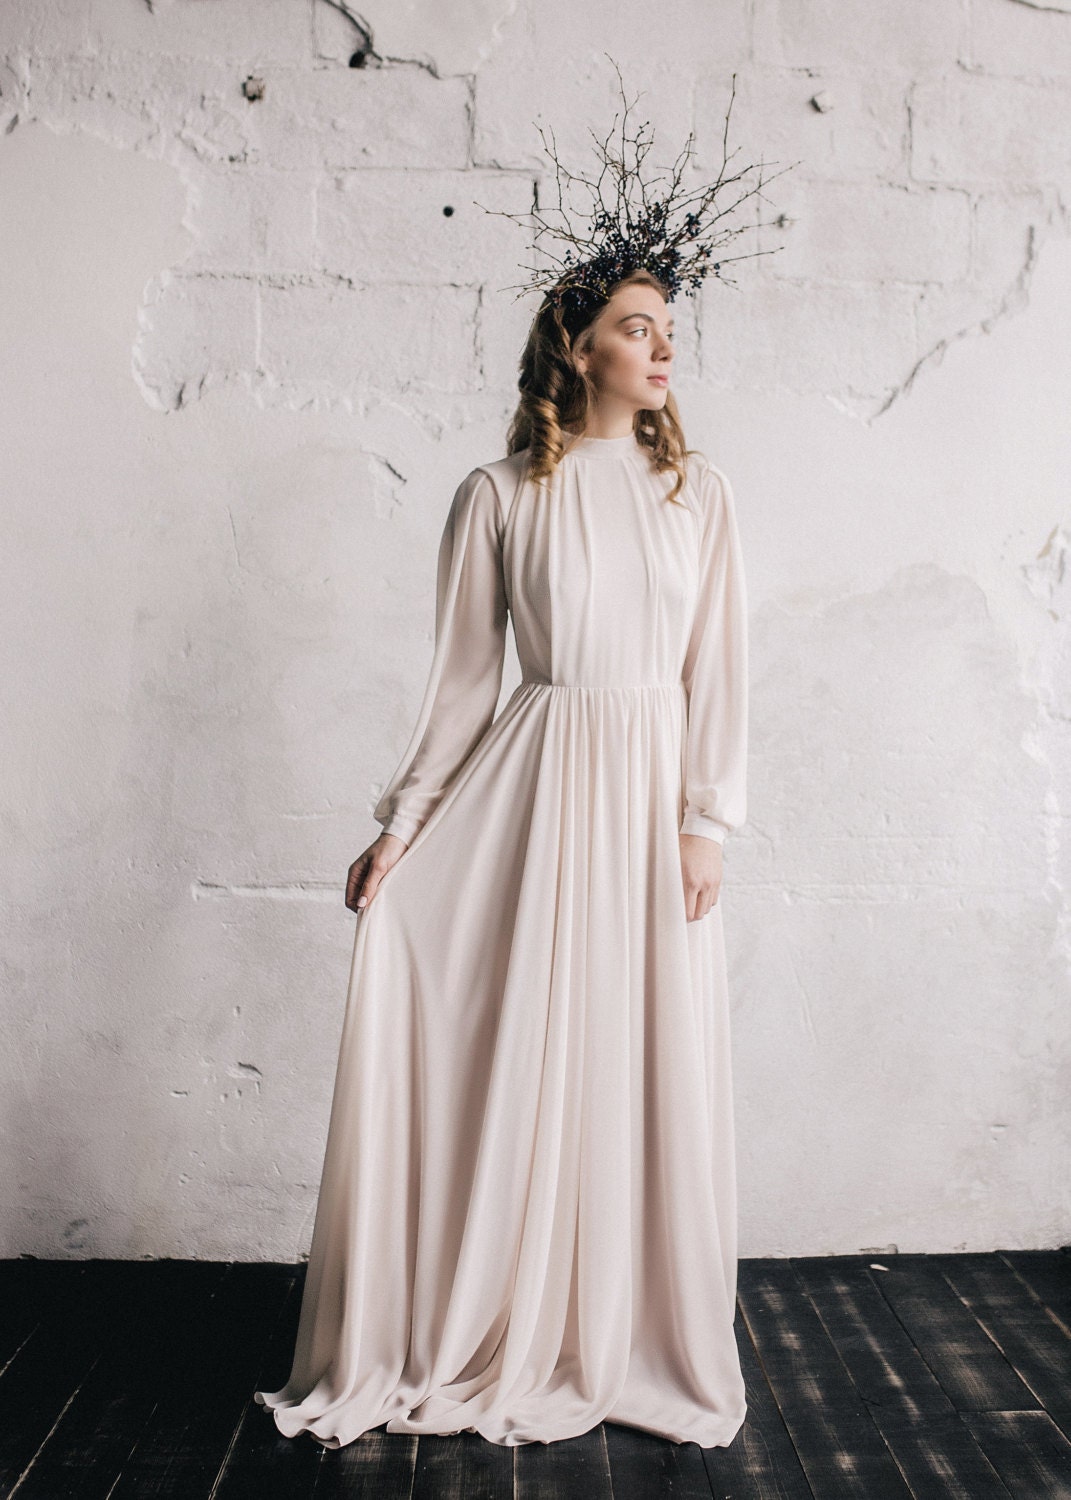 CHEYENNE LEOPARD PRINT BISHOP SLEEVE DRESS – Michelle Divine Boutique